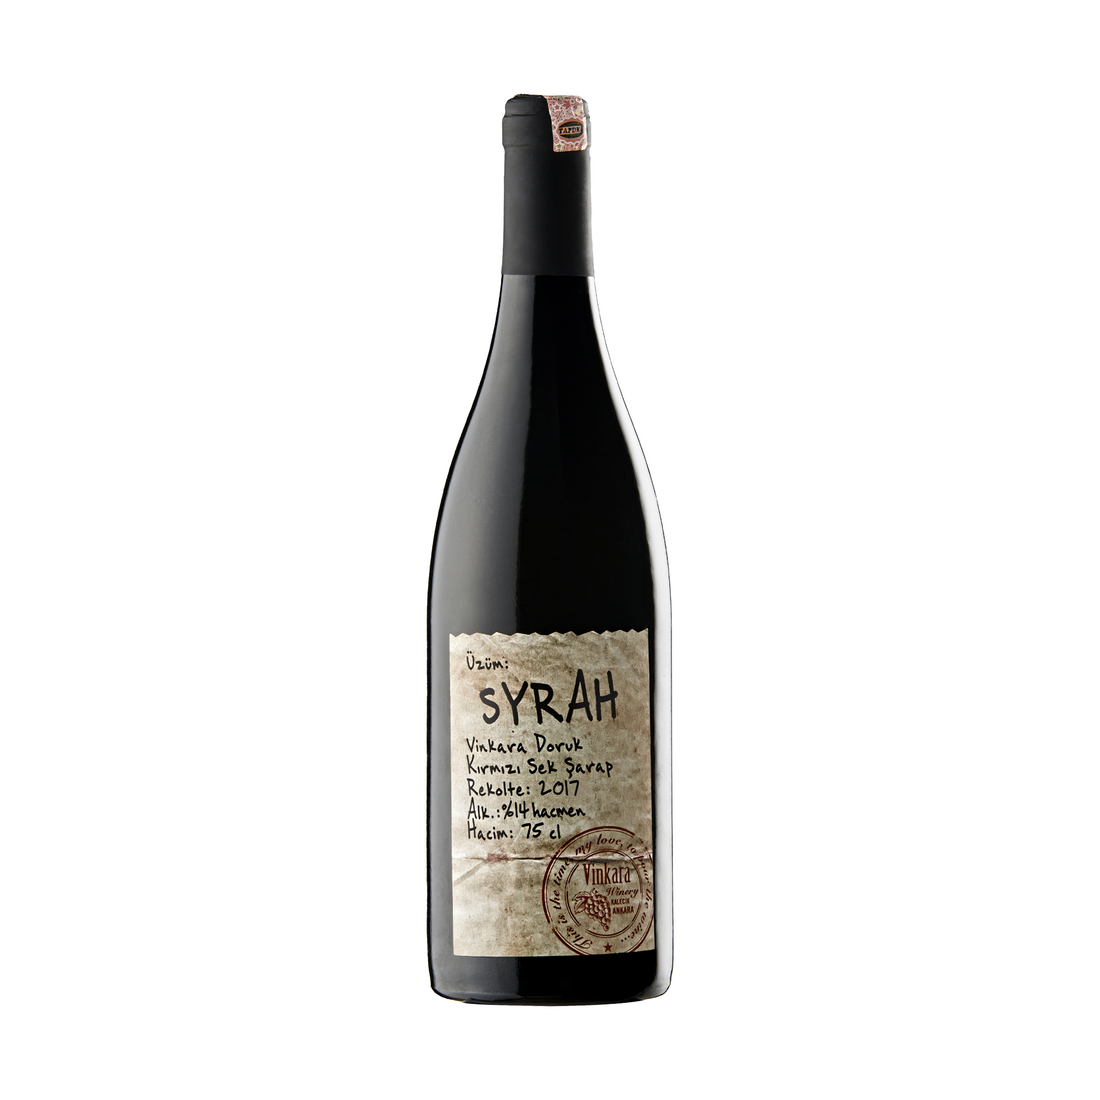 ヴィンカラ ドルク シラー 750ml 辛口 トルコ 赤ワイン | Vinkara Doruk Syrah Kirmizi Sek Sarap | Dry Red Wine